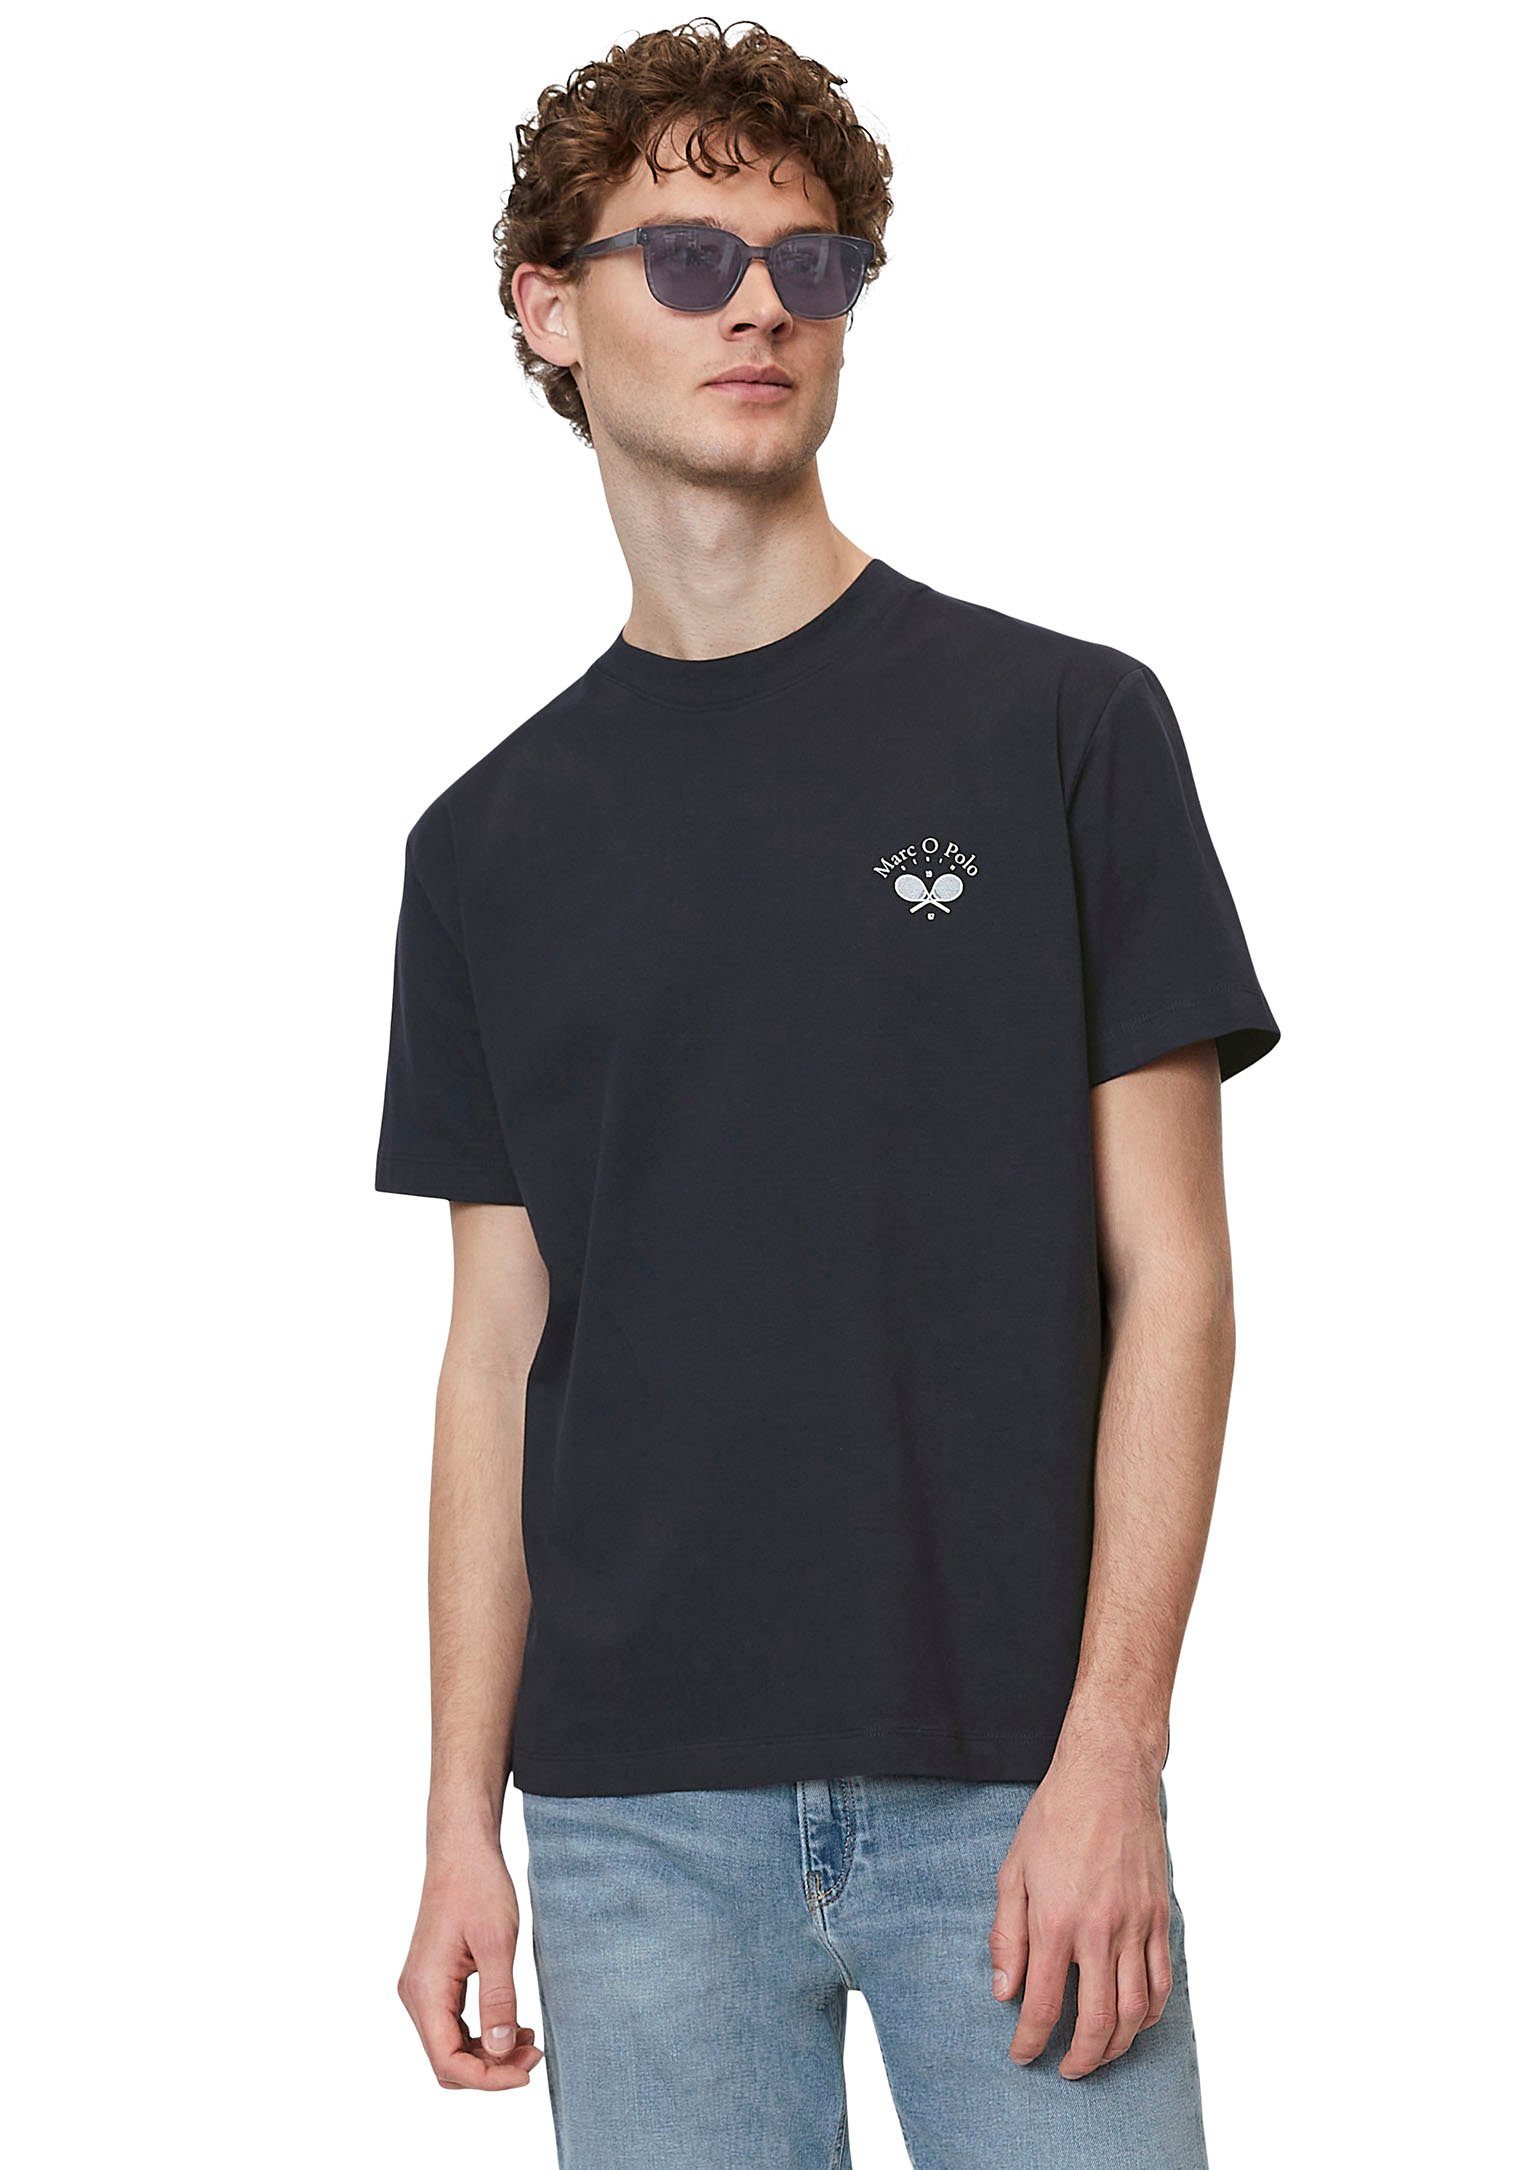 Marc O'Polo DENIM T-Shirt mit sportlichem Print in Brusthöhe marineblau | T-Shirts